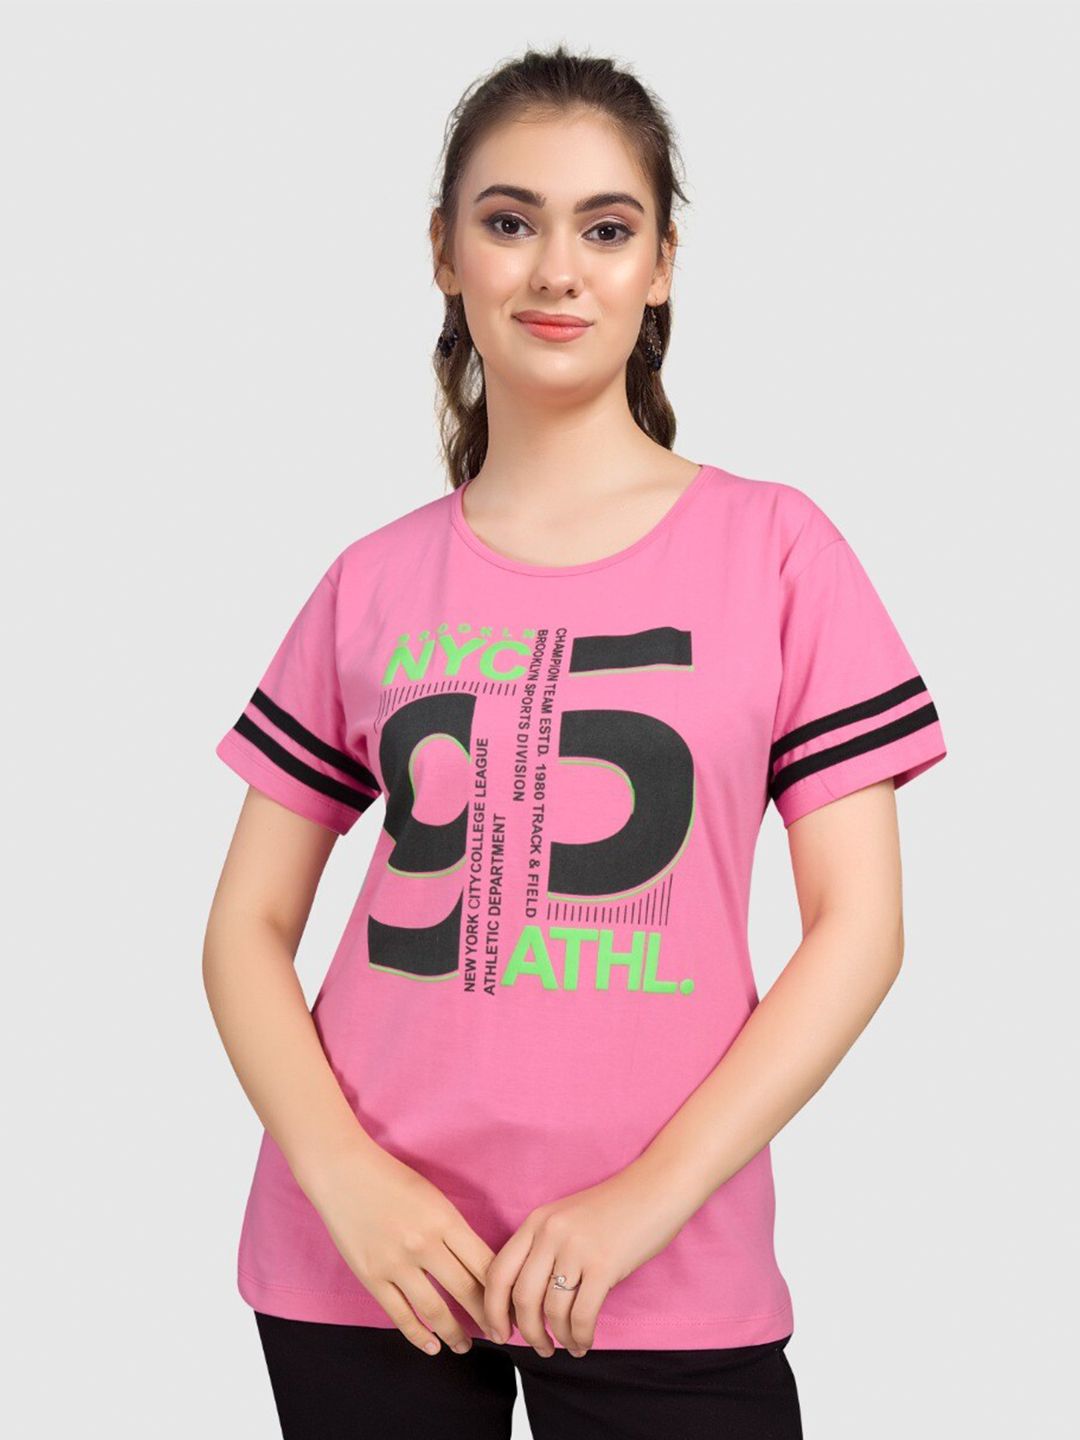 BAESD Women Varsity Printed Drop-Shoulder Sleeves T-shirt Price in India